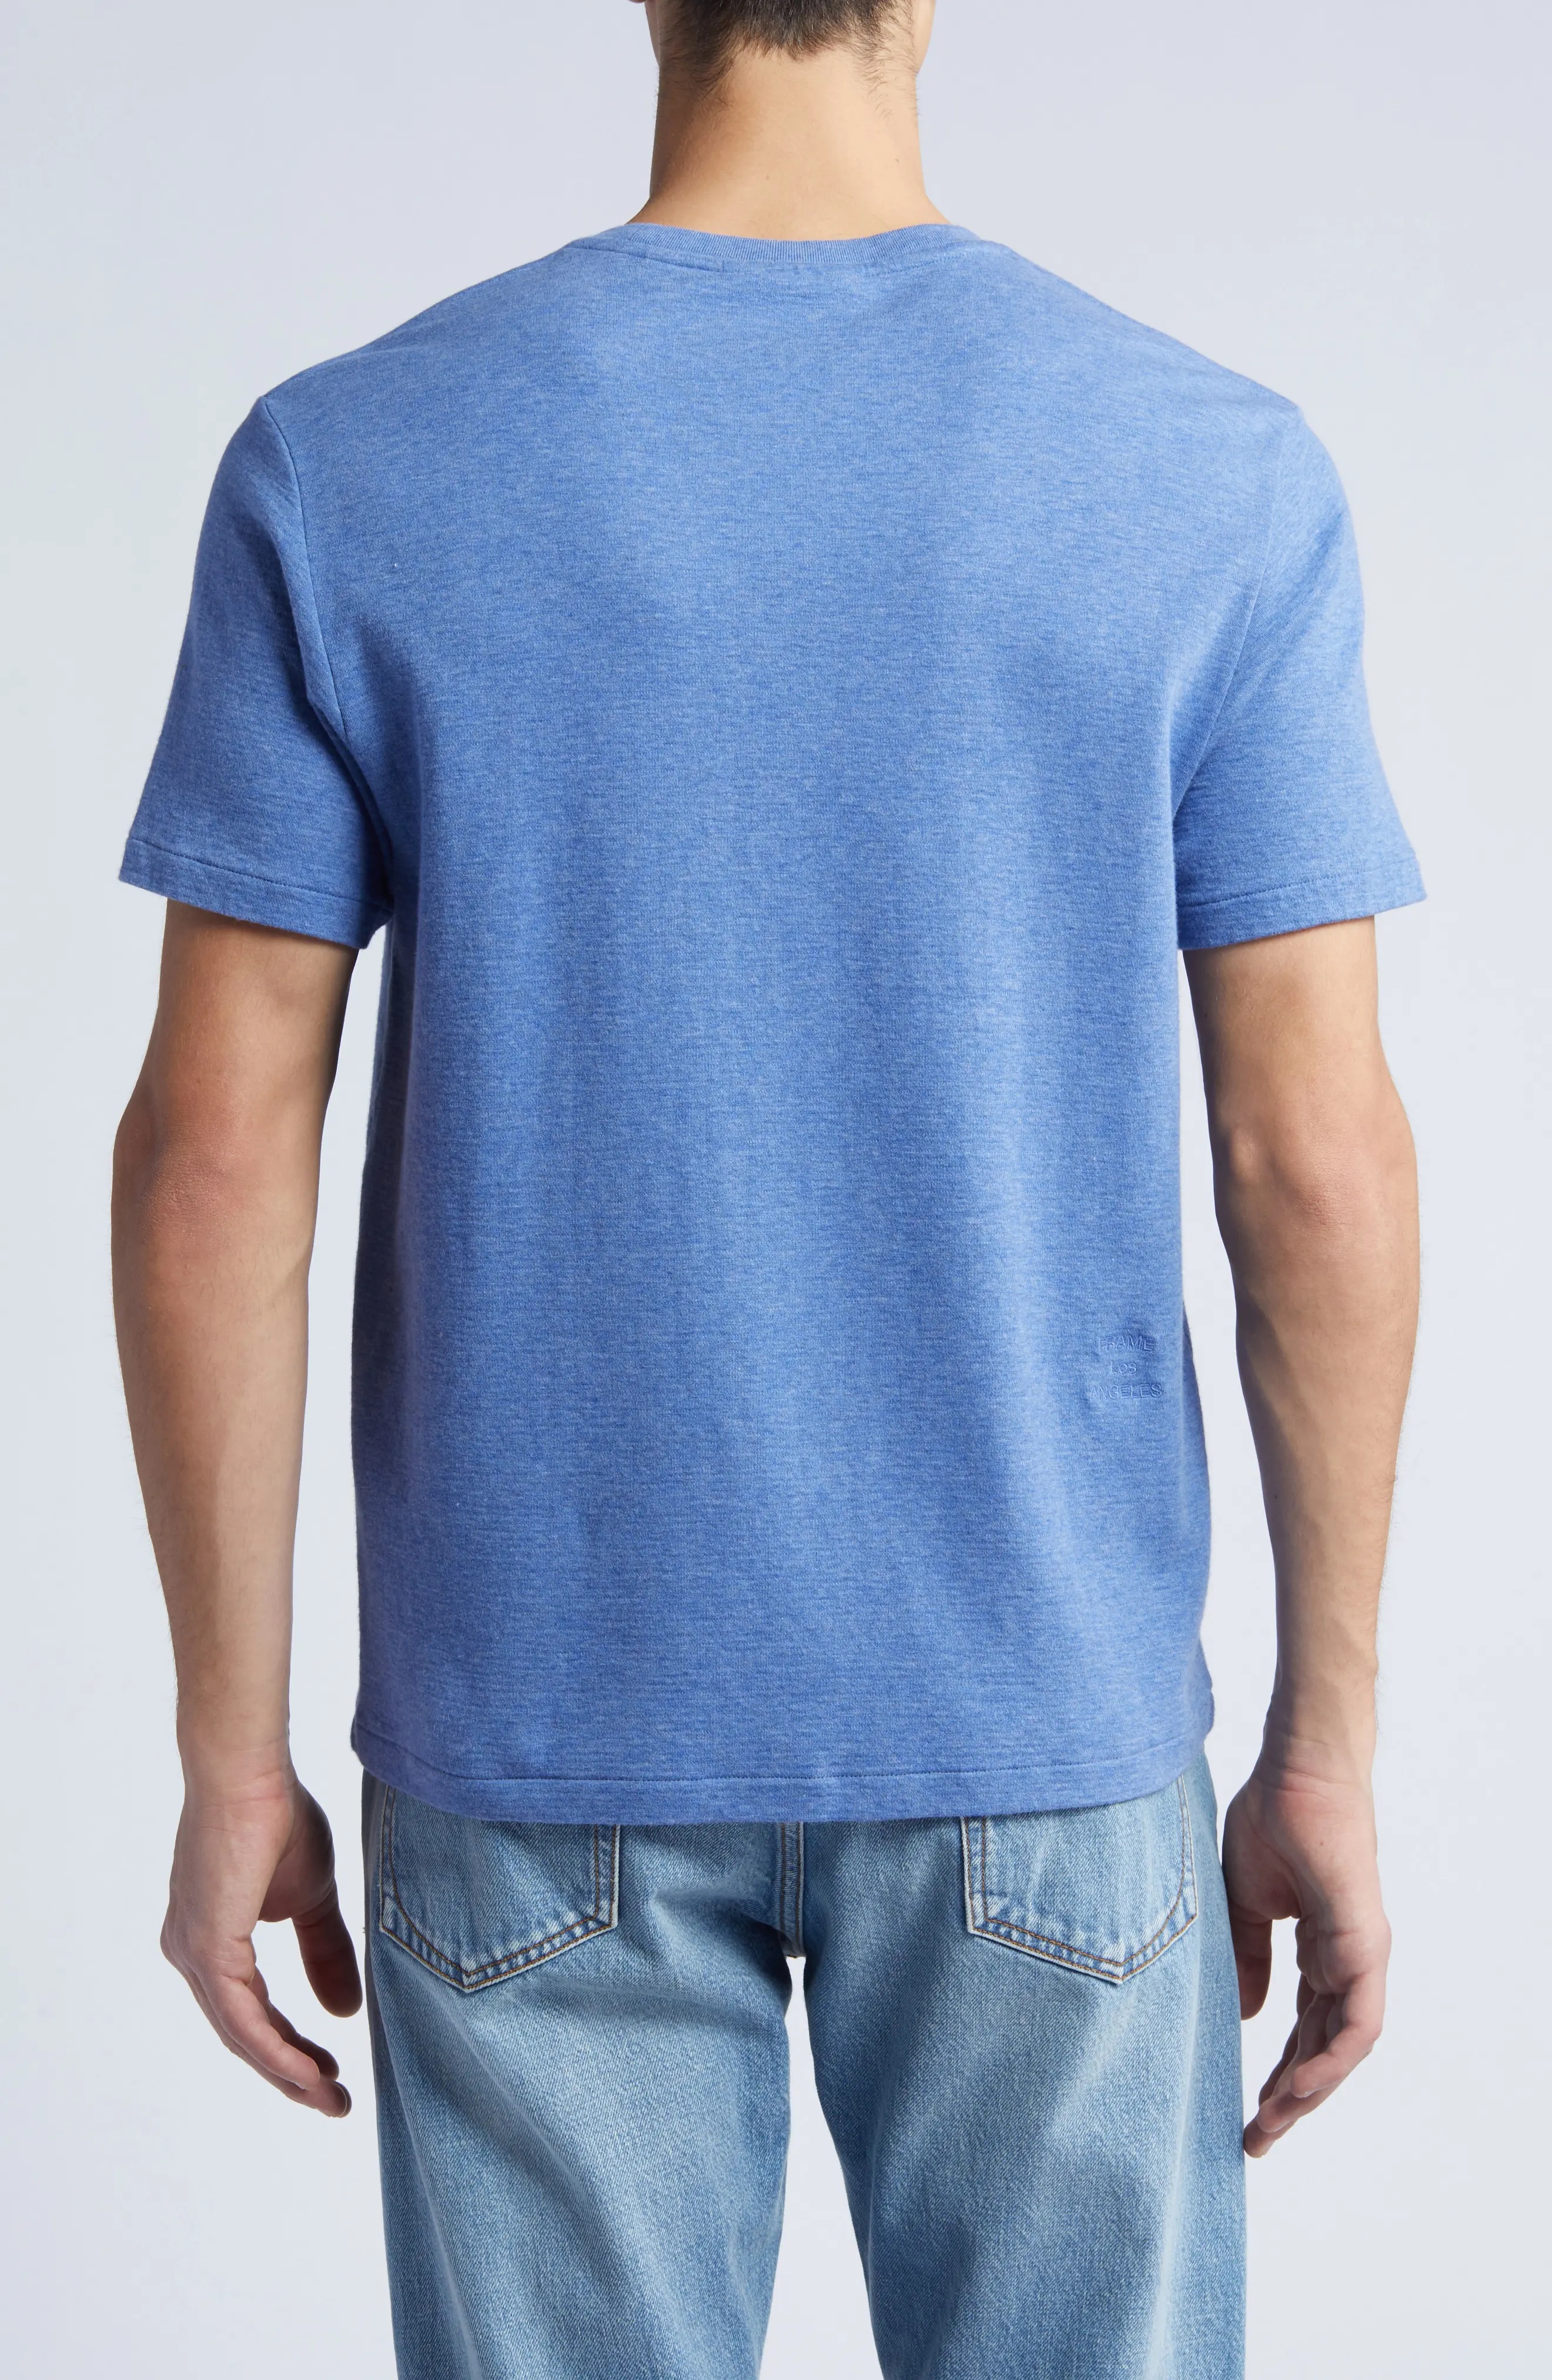 Duo Fold Cotton T-Shirt - 2